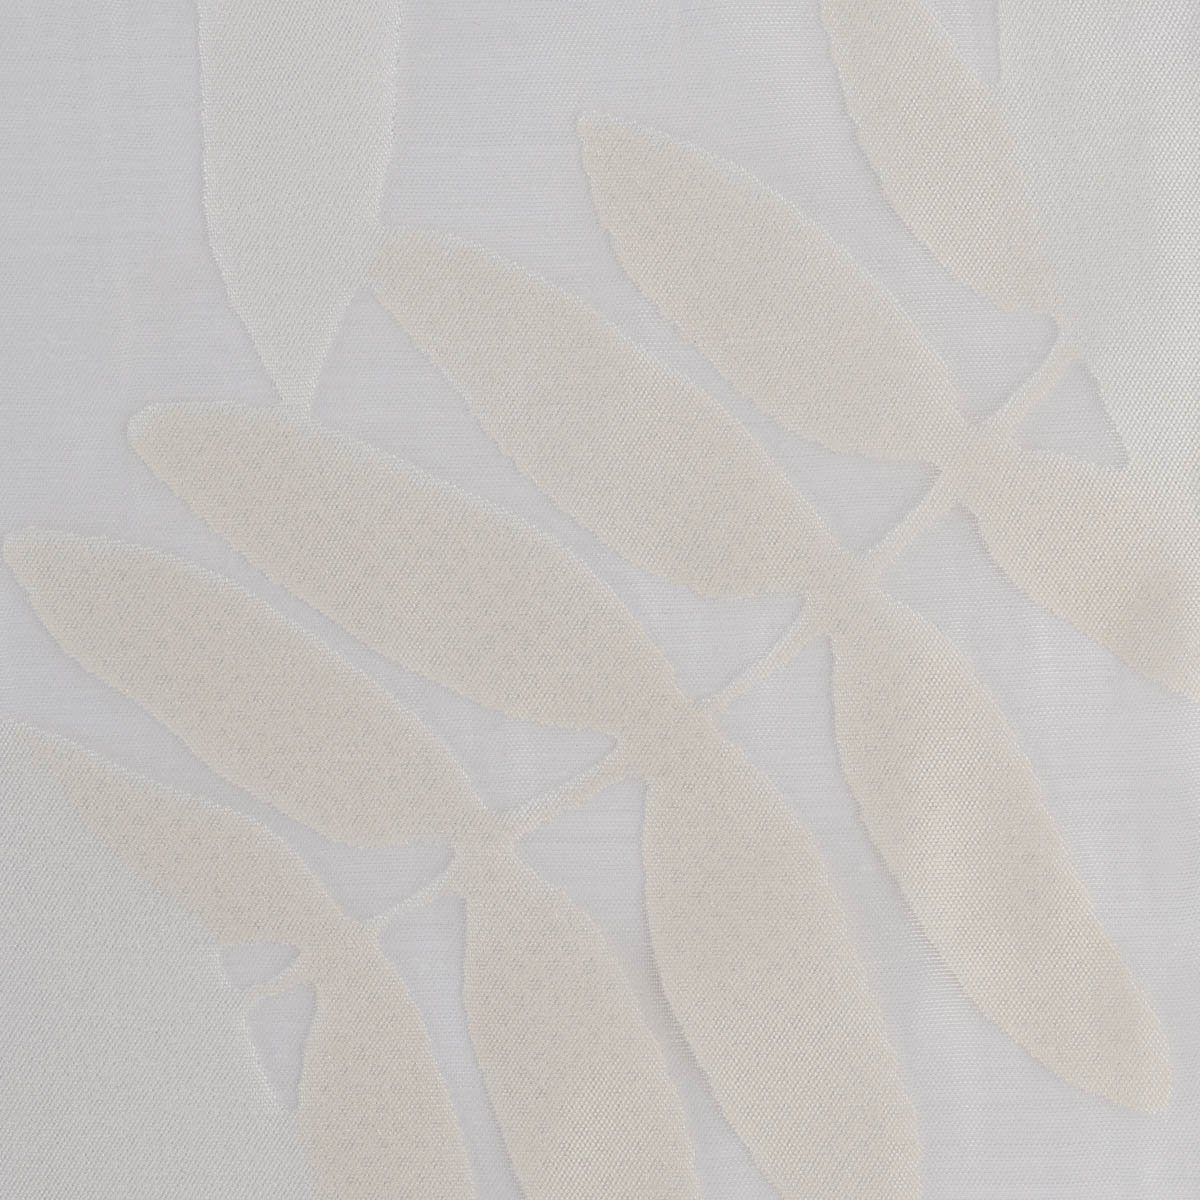 leicht Textil Bleiband, Blätter perforiert, 295cm, Meterware weiß Madagaskar überbreit Rasch Organza, mit Gardinenstoff Ausbrenner